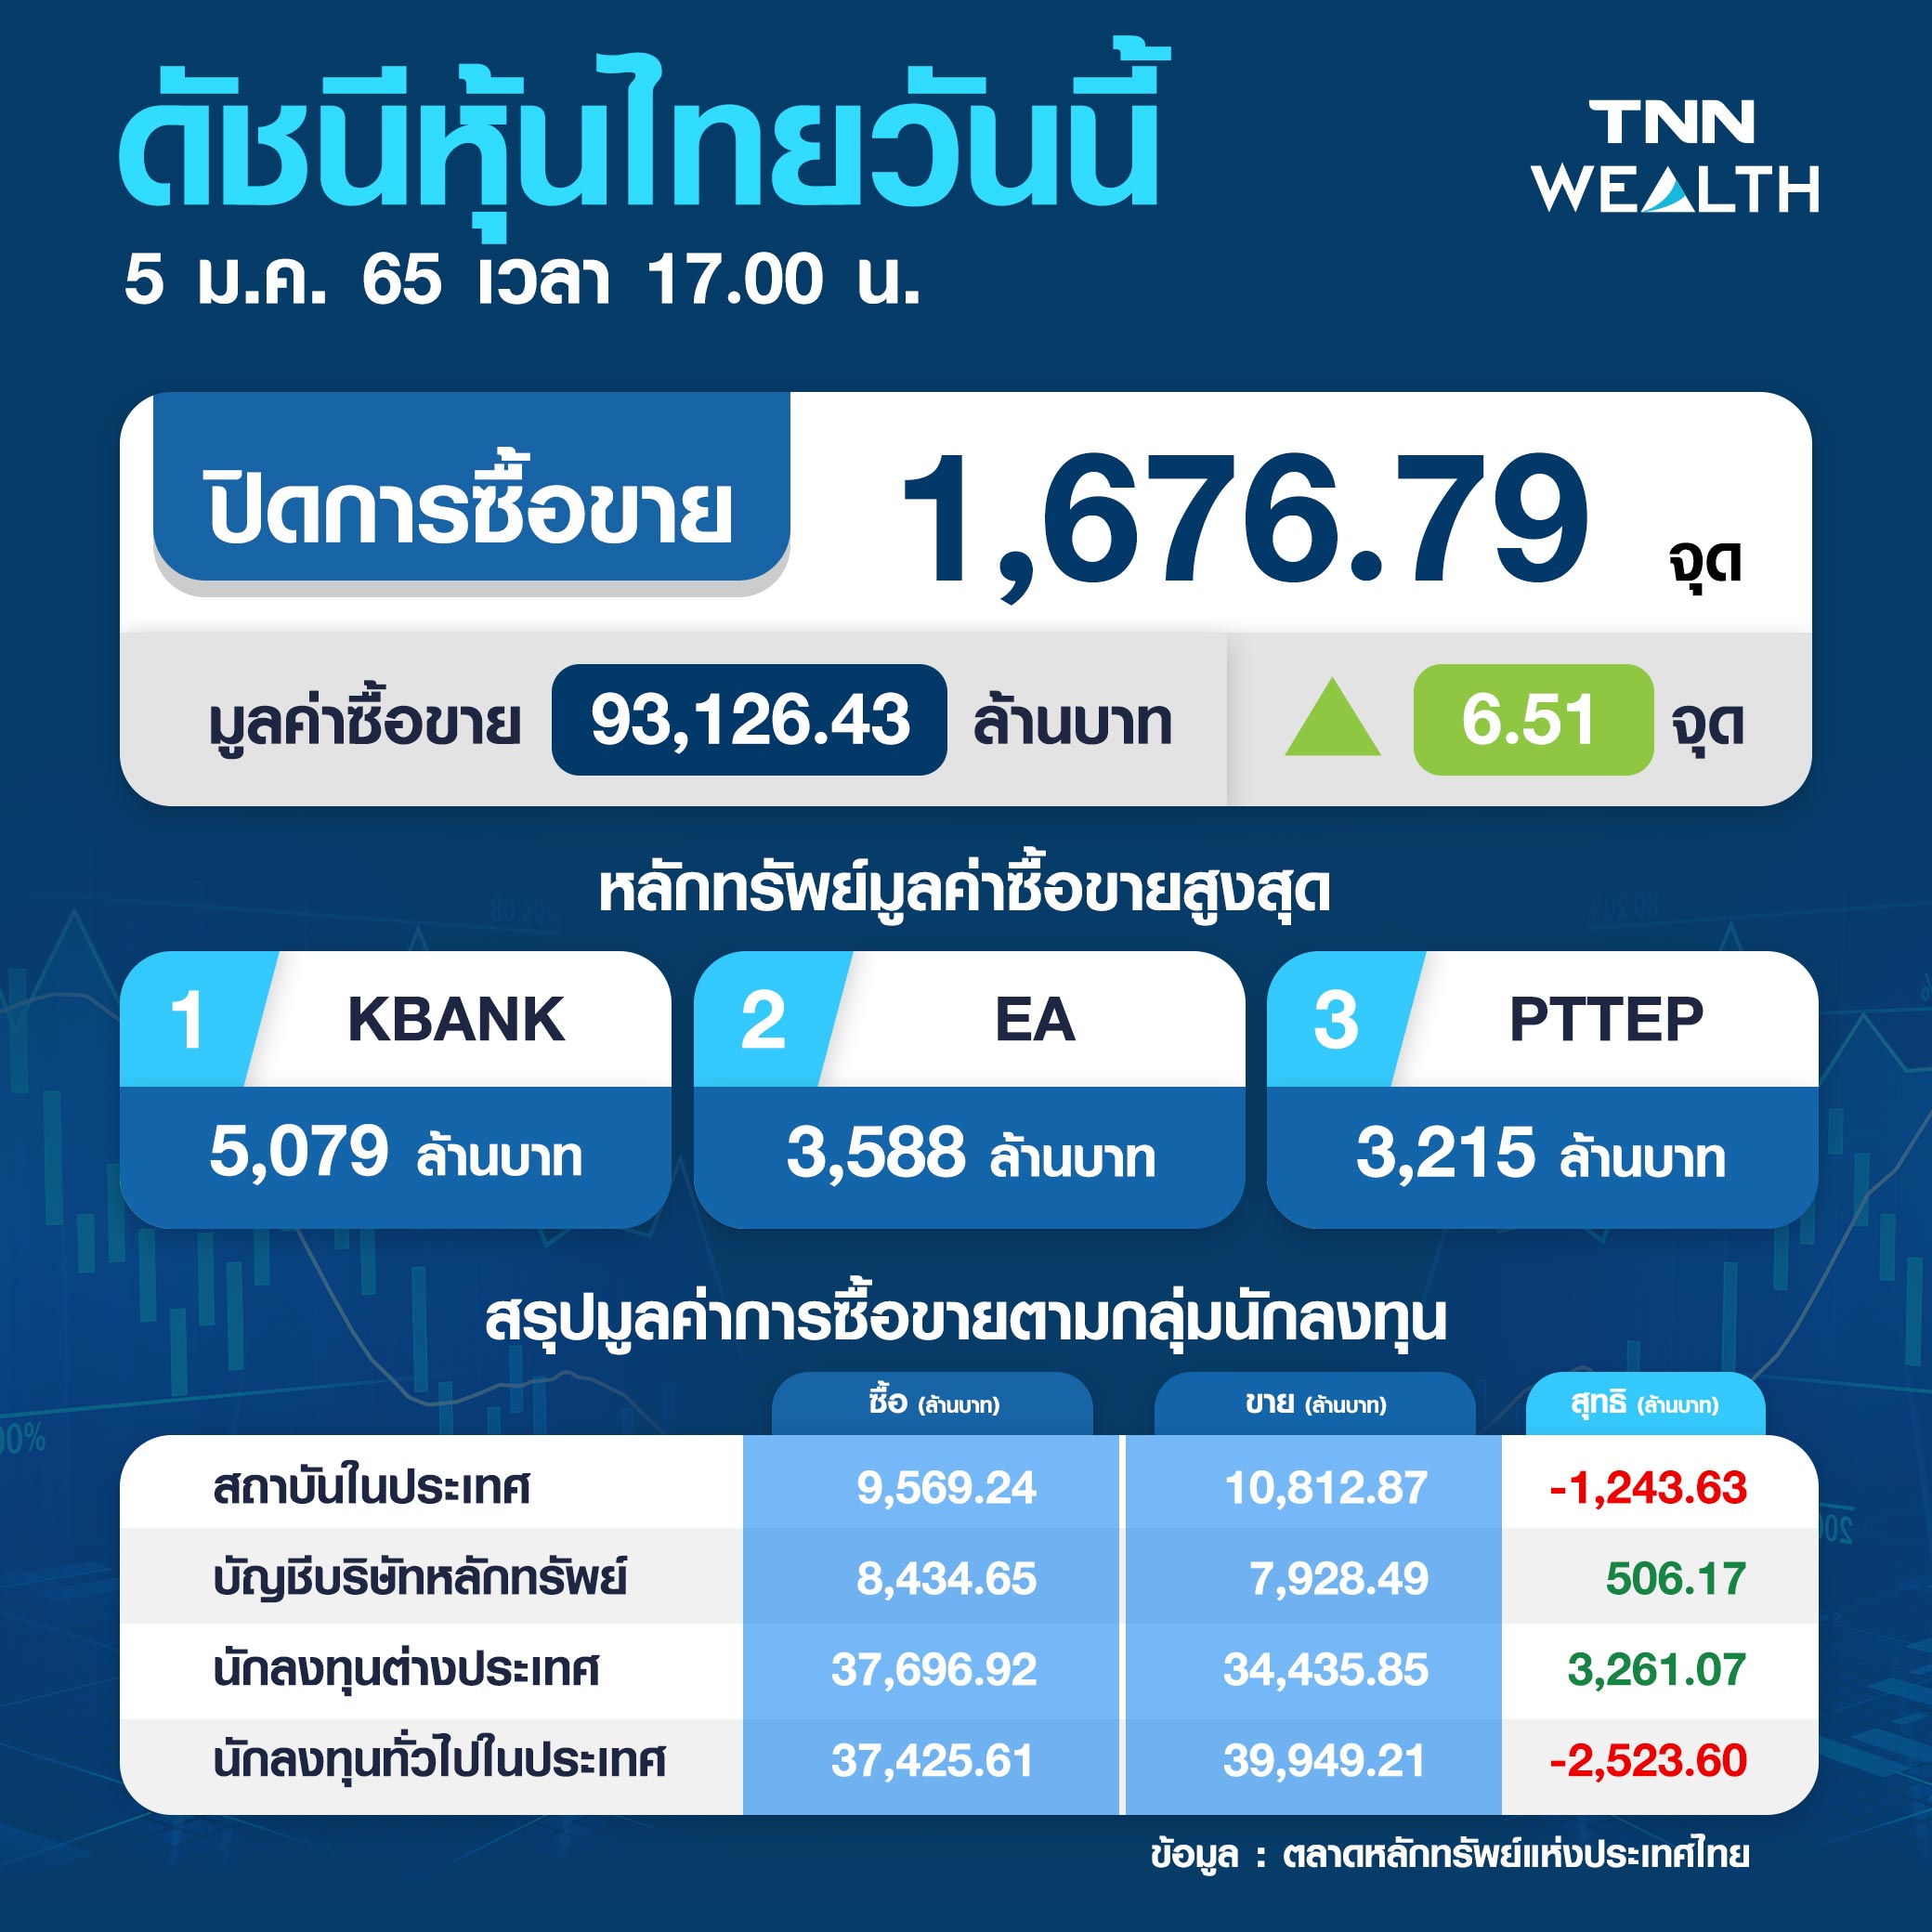 หุ้นไทยปิดบวก  6.51 จุด รับอานิสงส์ราคาน้ำมันปรับพุ่งขึ้น 